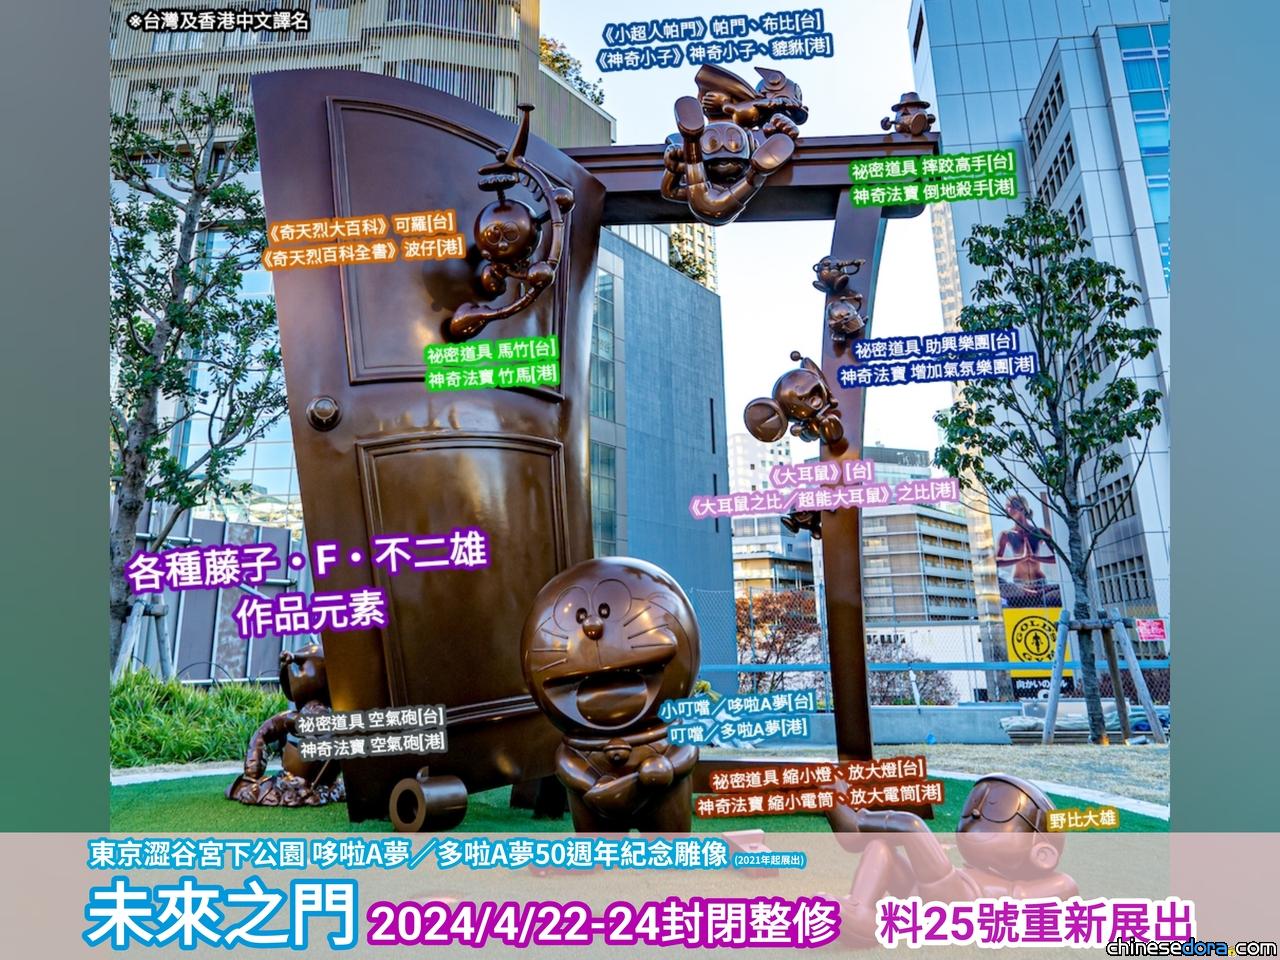 [日本] 宮下公園「哆啦A夢 未來之門」 4/22起3天封閉整修